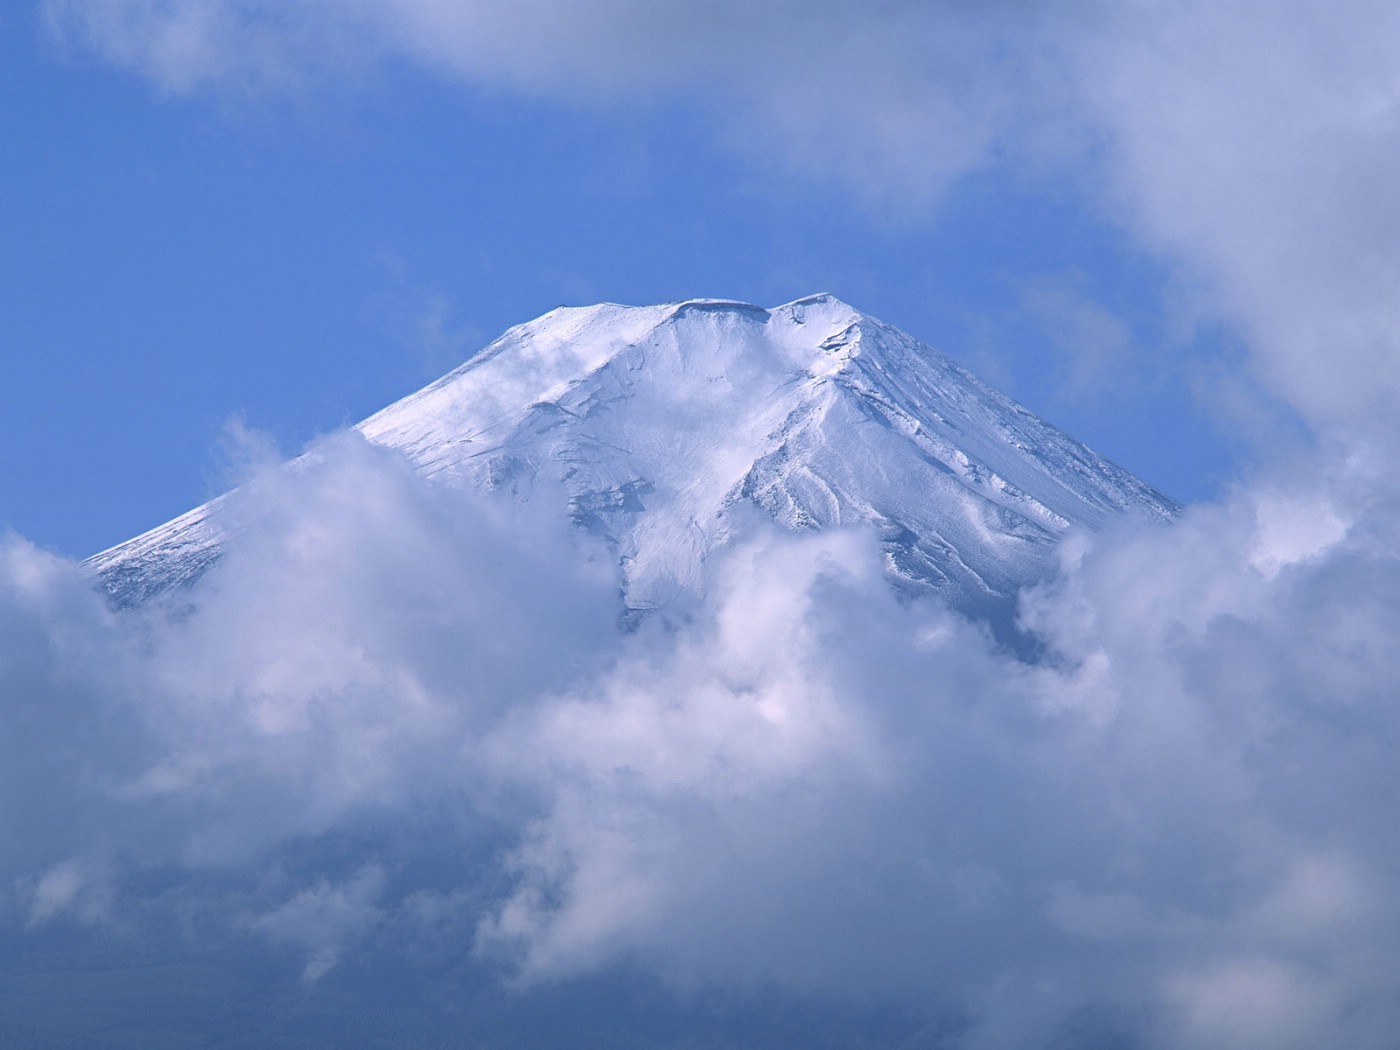 壁纸1400x1050富士山风光壁纸 富士山风光壁纸 富士山风光图片 富士山风光素材 风景壁纸 风景图库 风景图片素材桌面壁纸